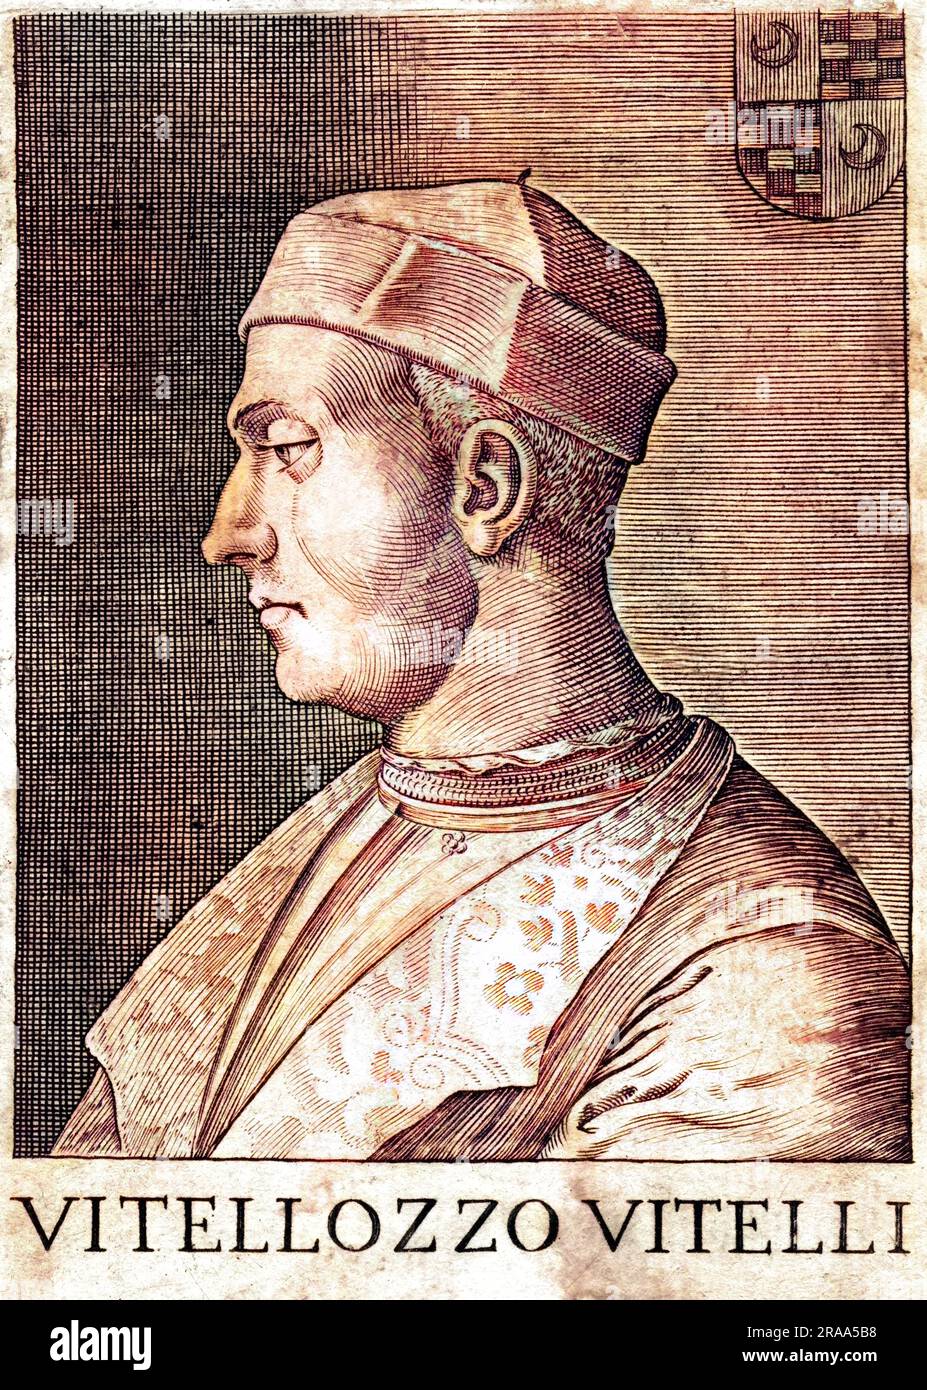 VITELLOZZO VITELLI soldat italien, membre de la famille qui a dirigé Citta di Castelli : assassiné. Date: ? - 1503 Banque D'Images